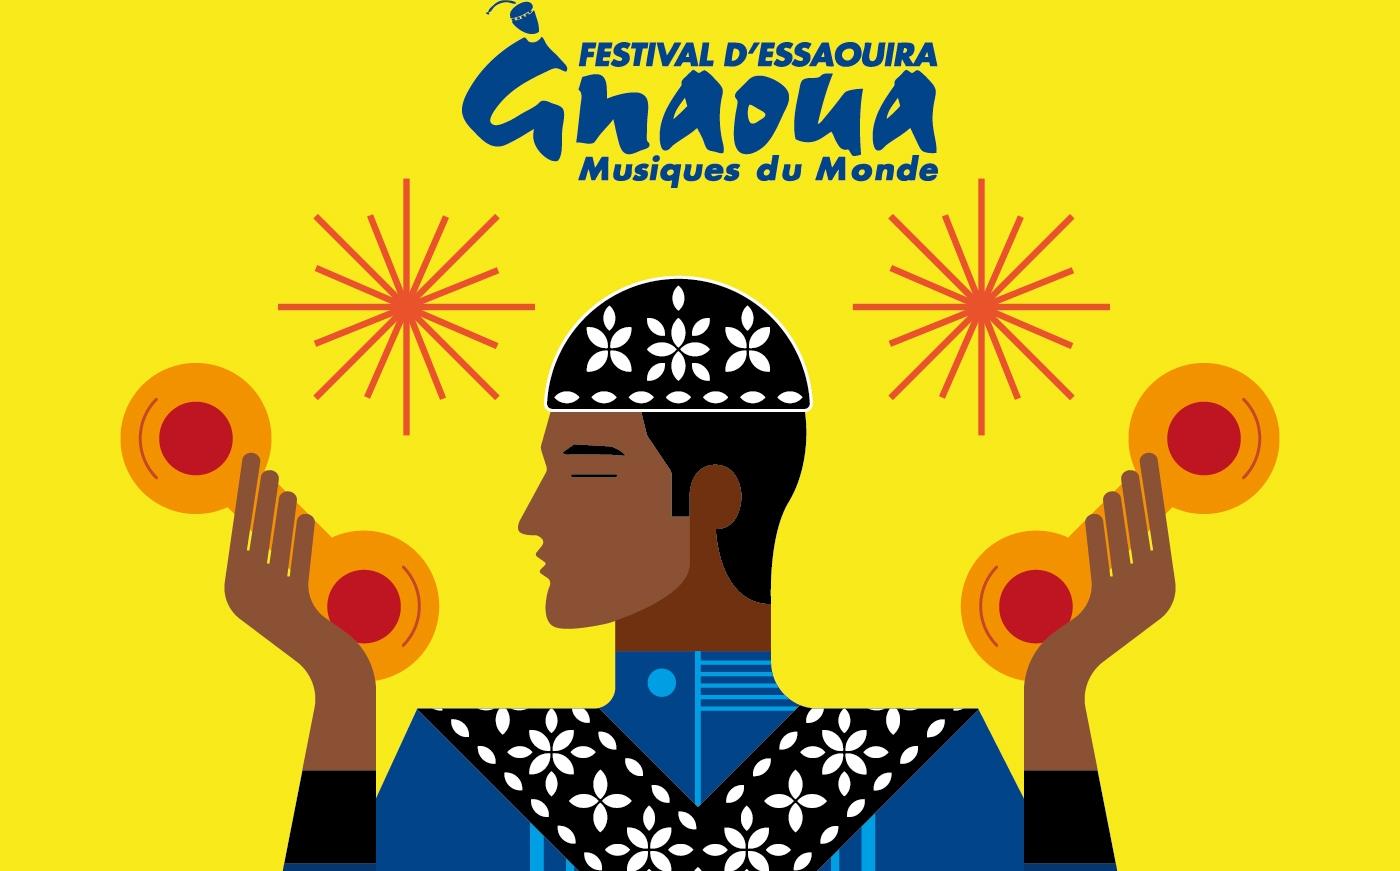 مهرجان كناوة وموسيقى العالم بالصويرة مثال فريد لتلاحم الثقافات